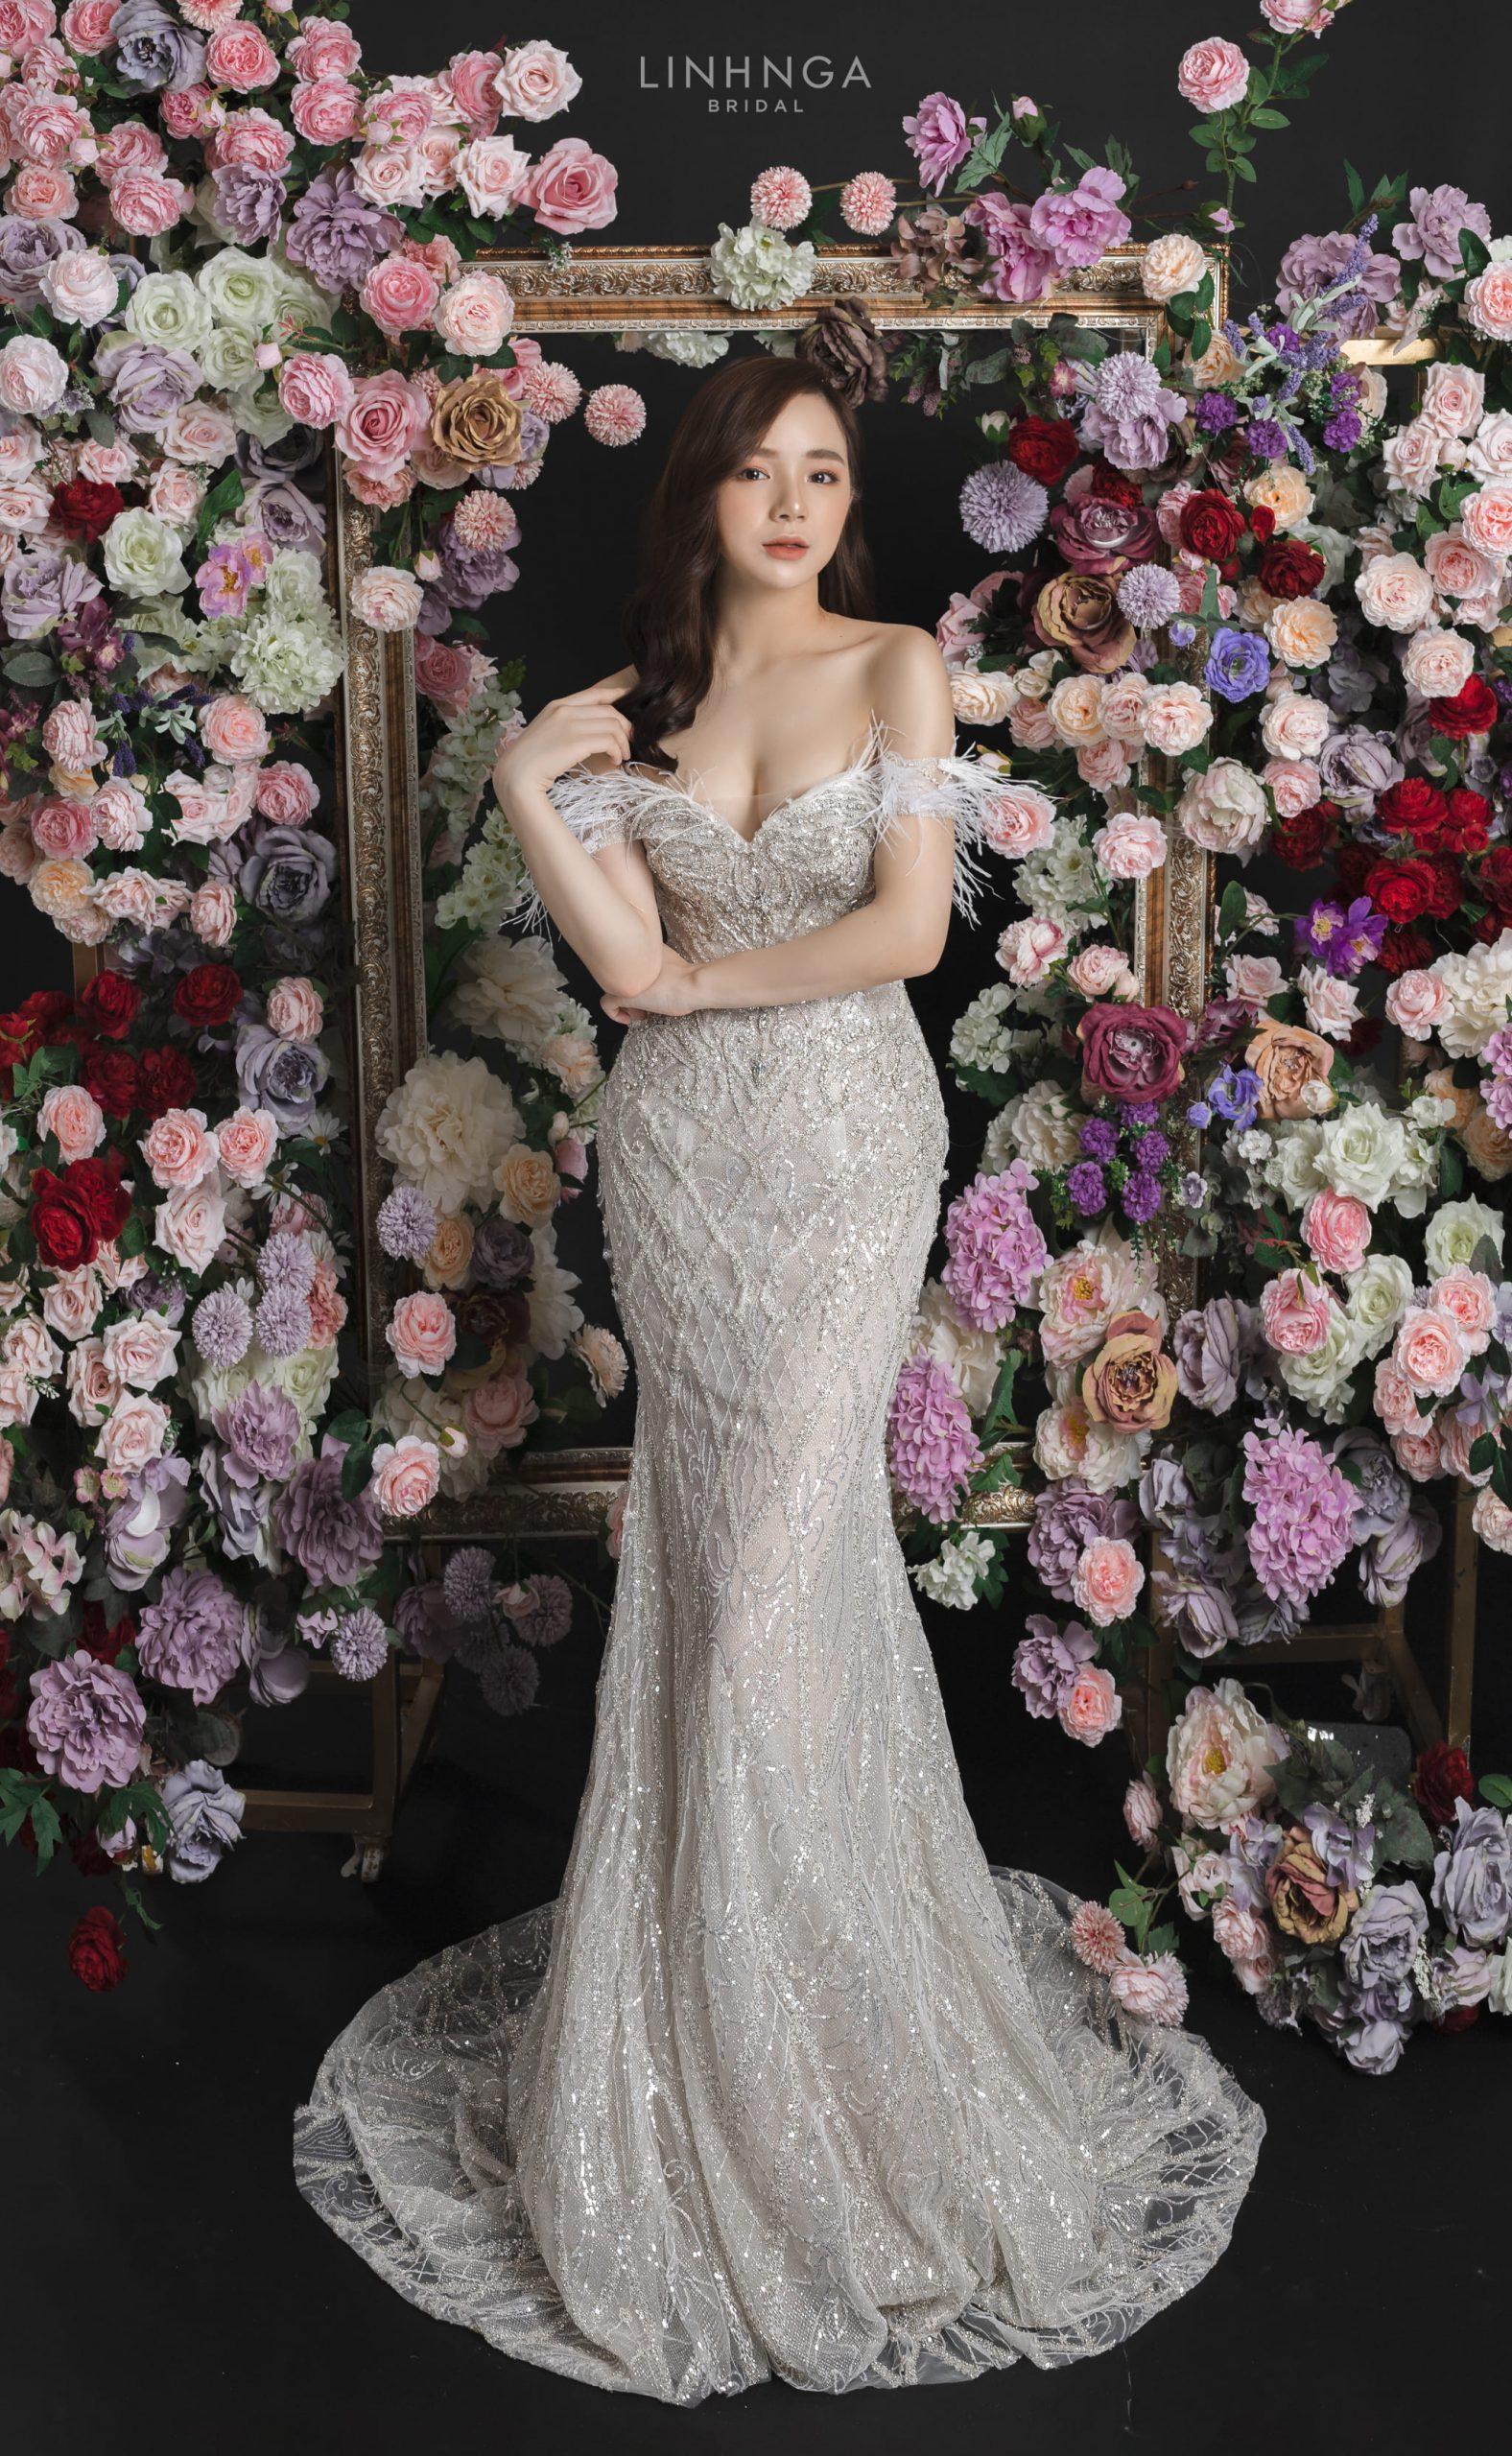 Cô dâu Nhã Tiên quyến rũ khi diện váy cưới đuôi cá trễ vai của Linh Nga Bridal